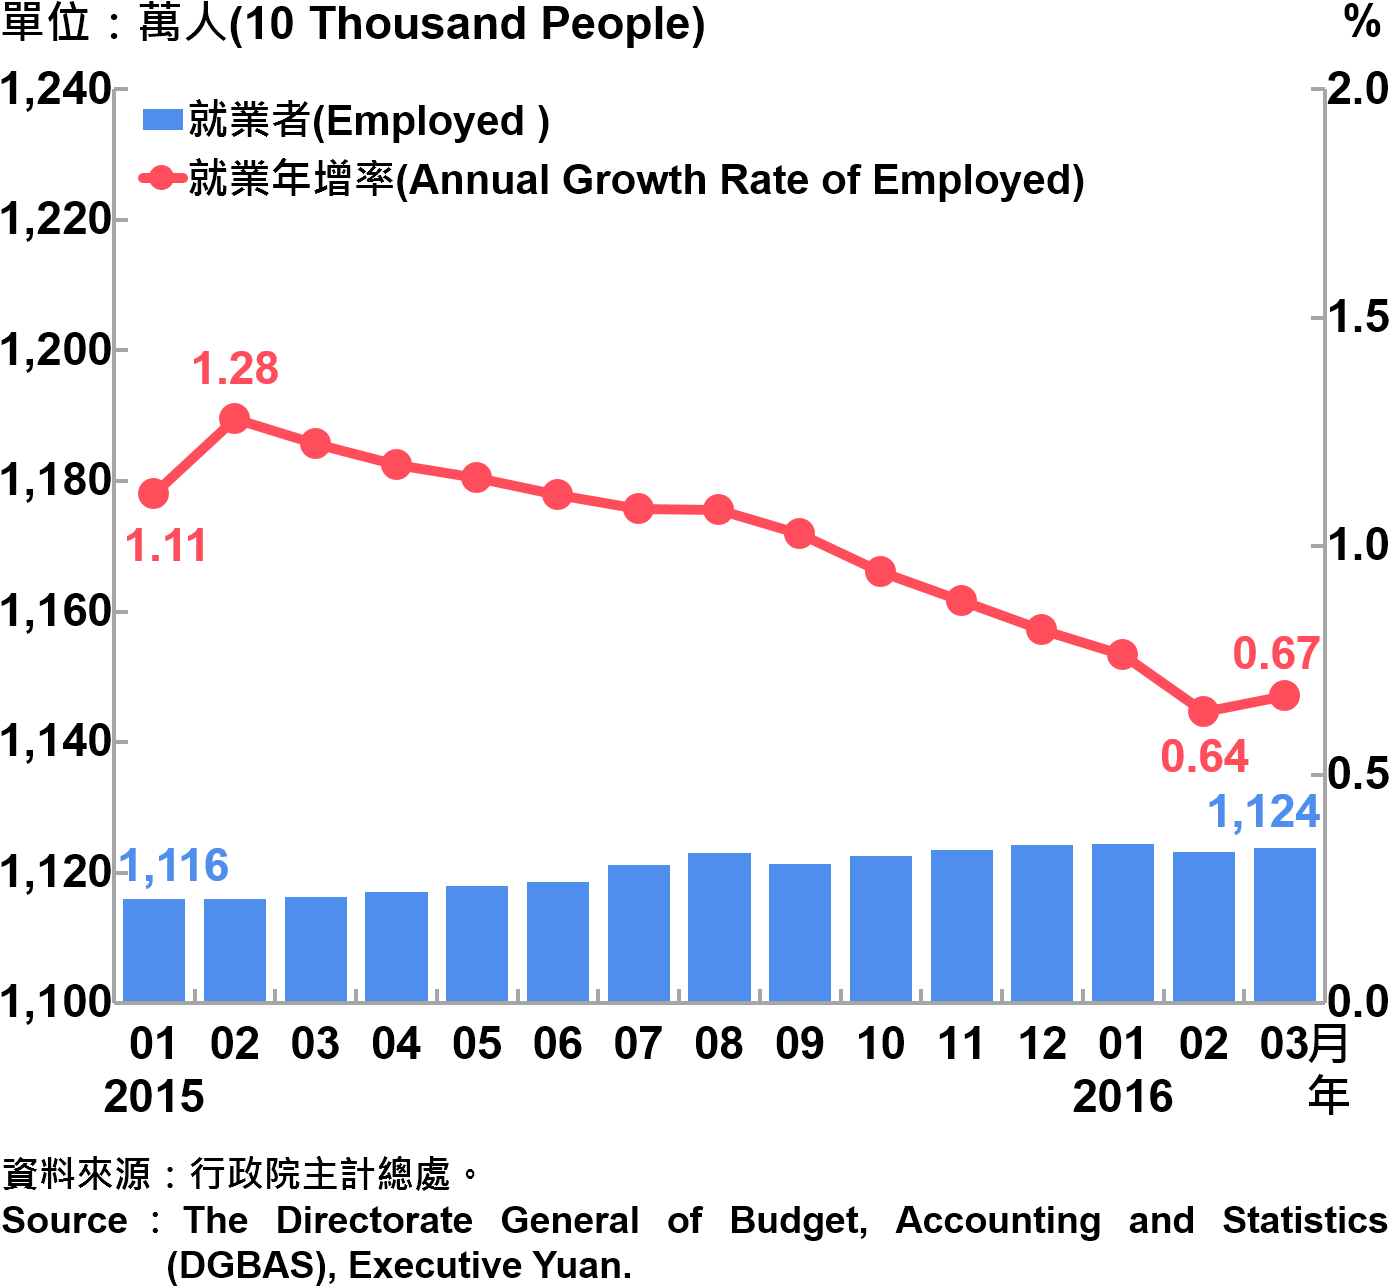 圖6-1 就業人數及就業成長率 Employment and Annual Growth Rate